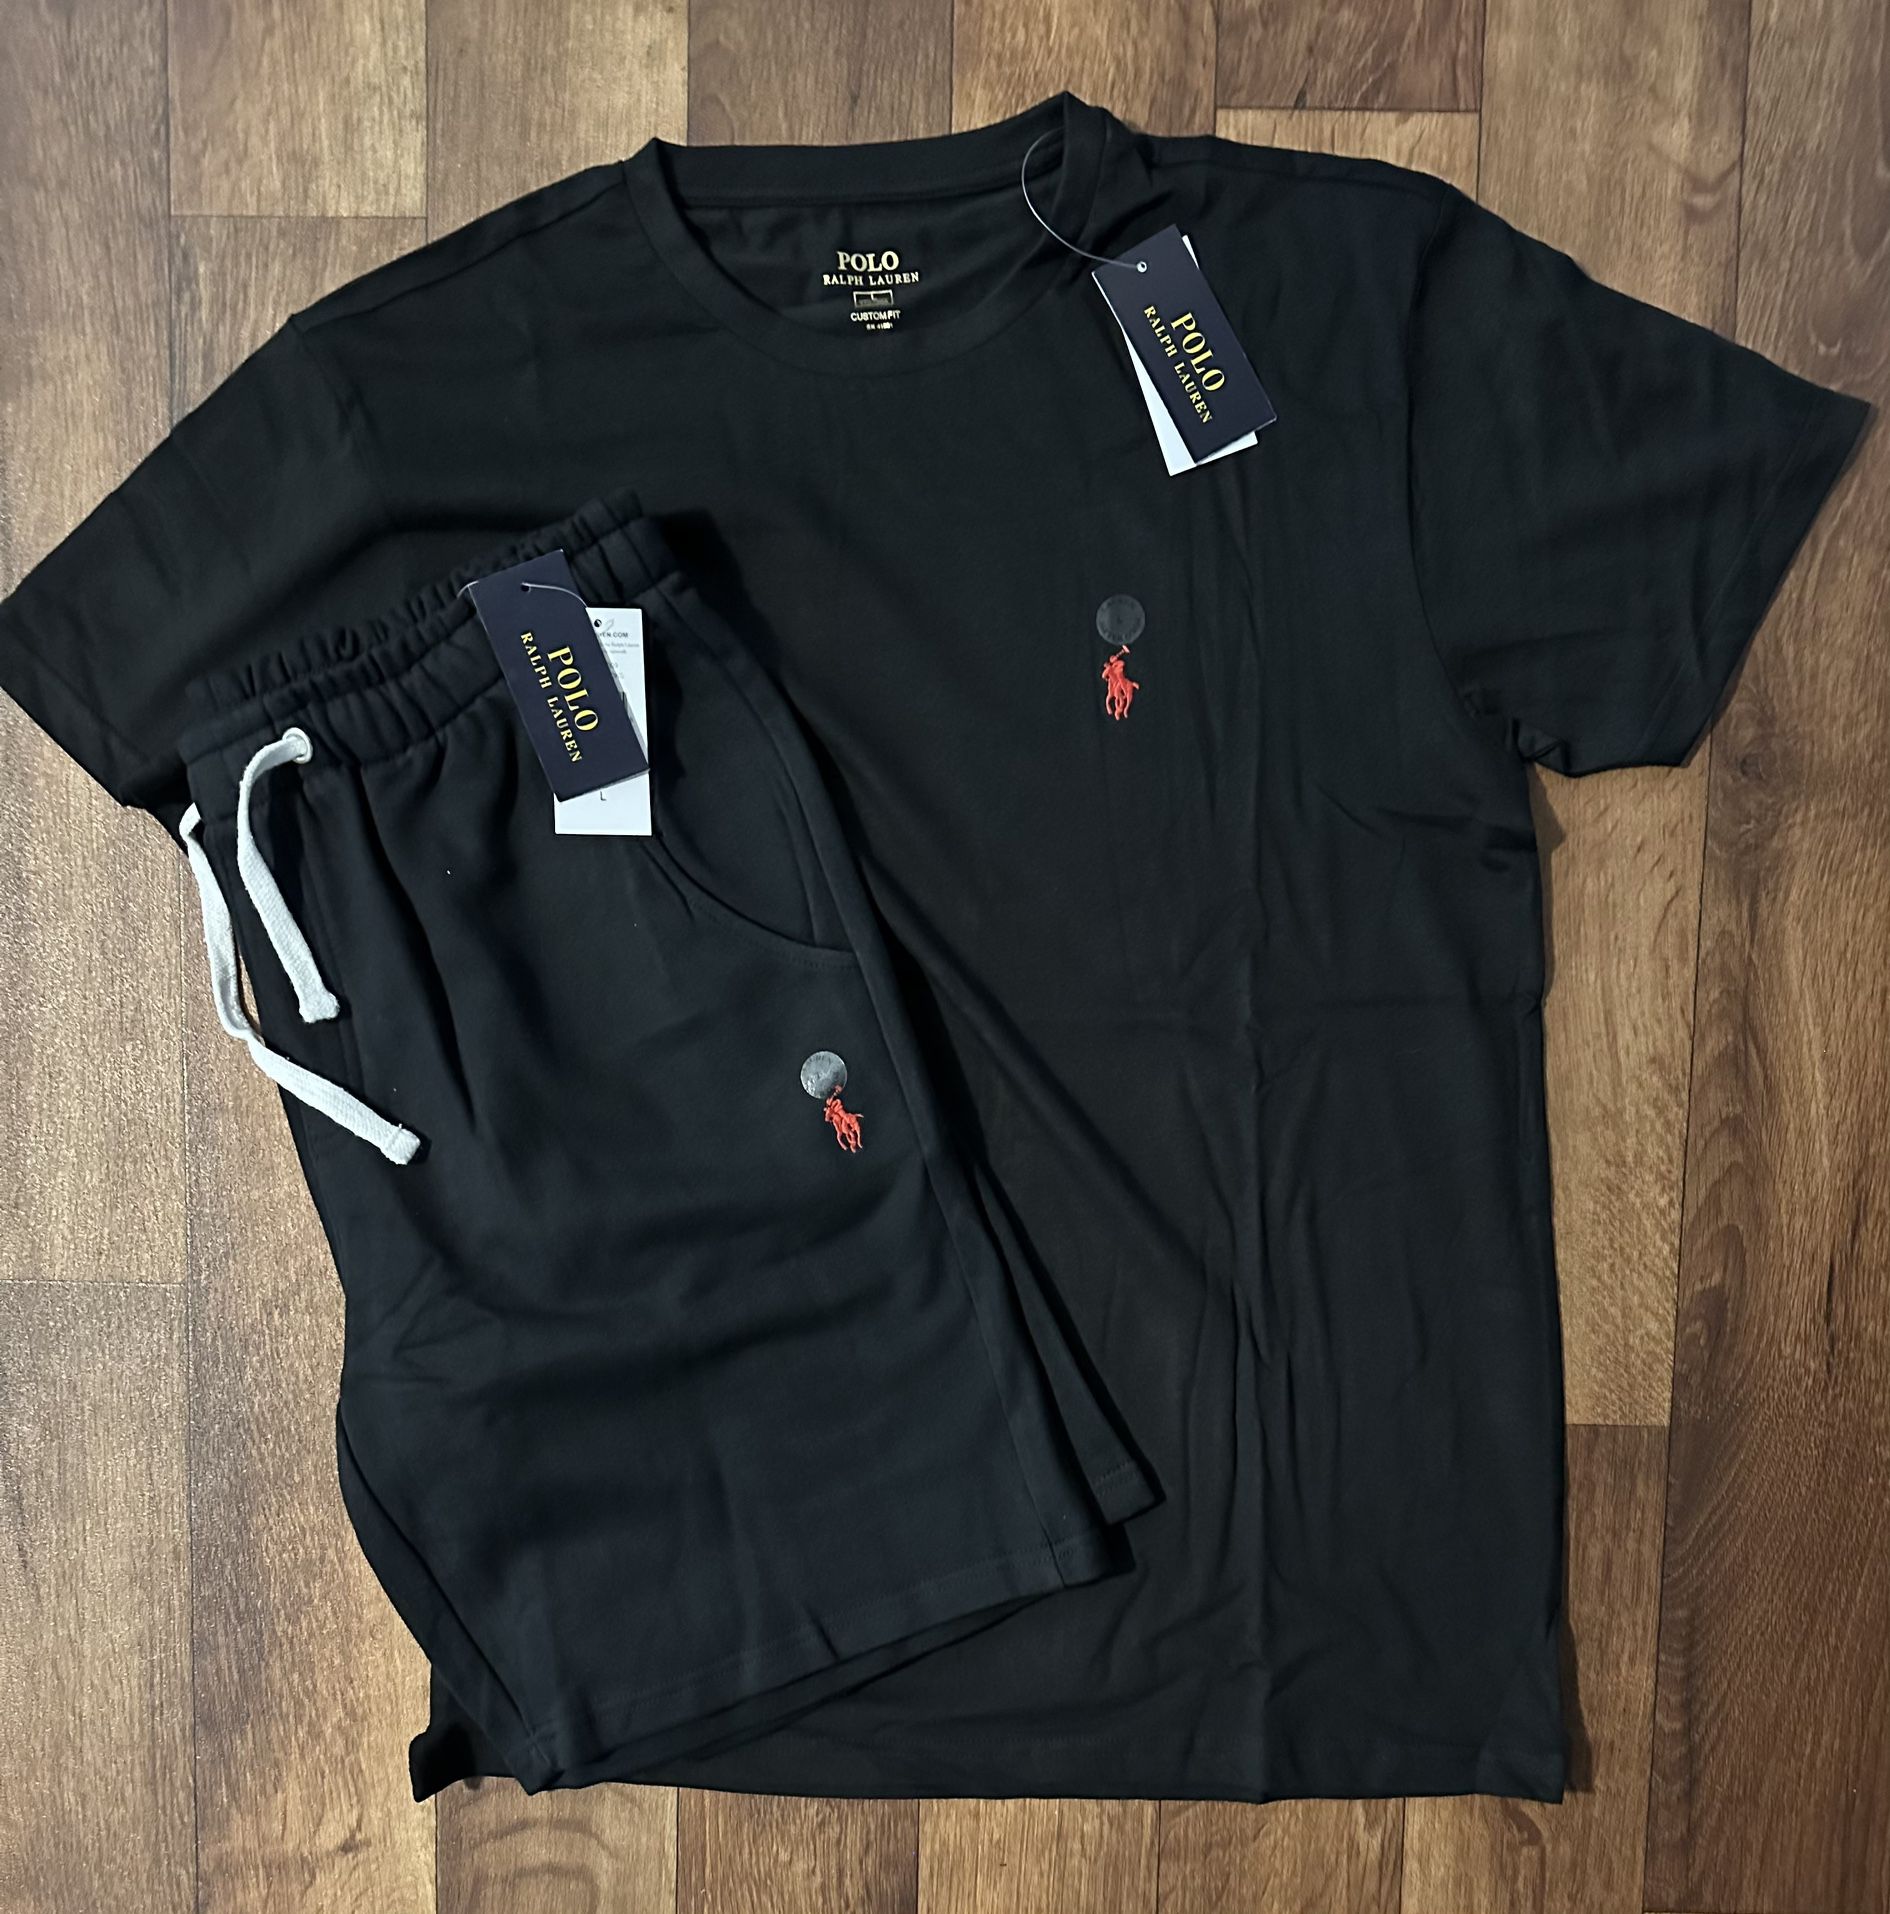 Polo Ralph Lauren Men’s T-shirt & Shorts Set (Shipping Only)